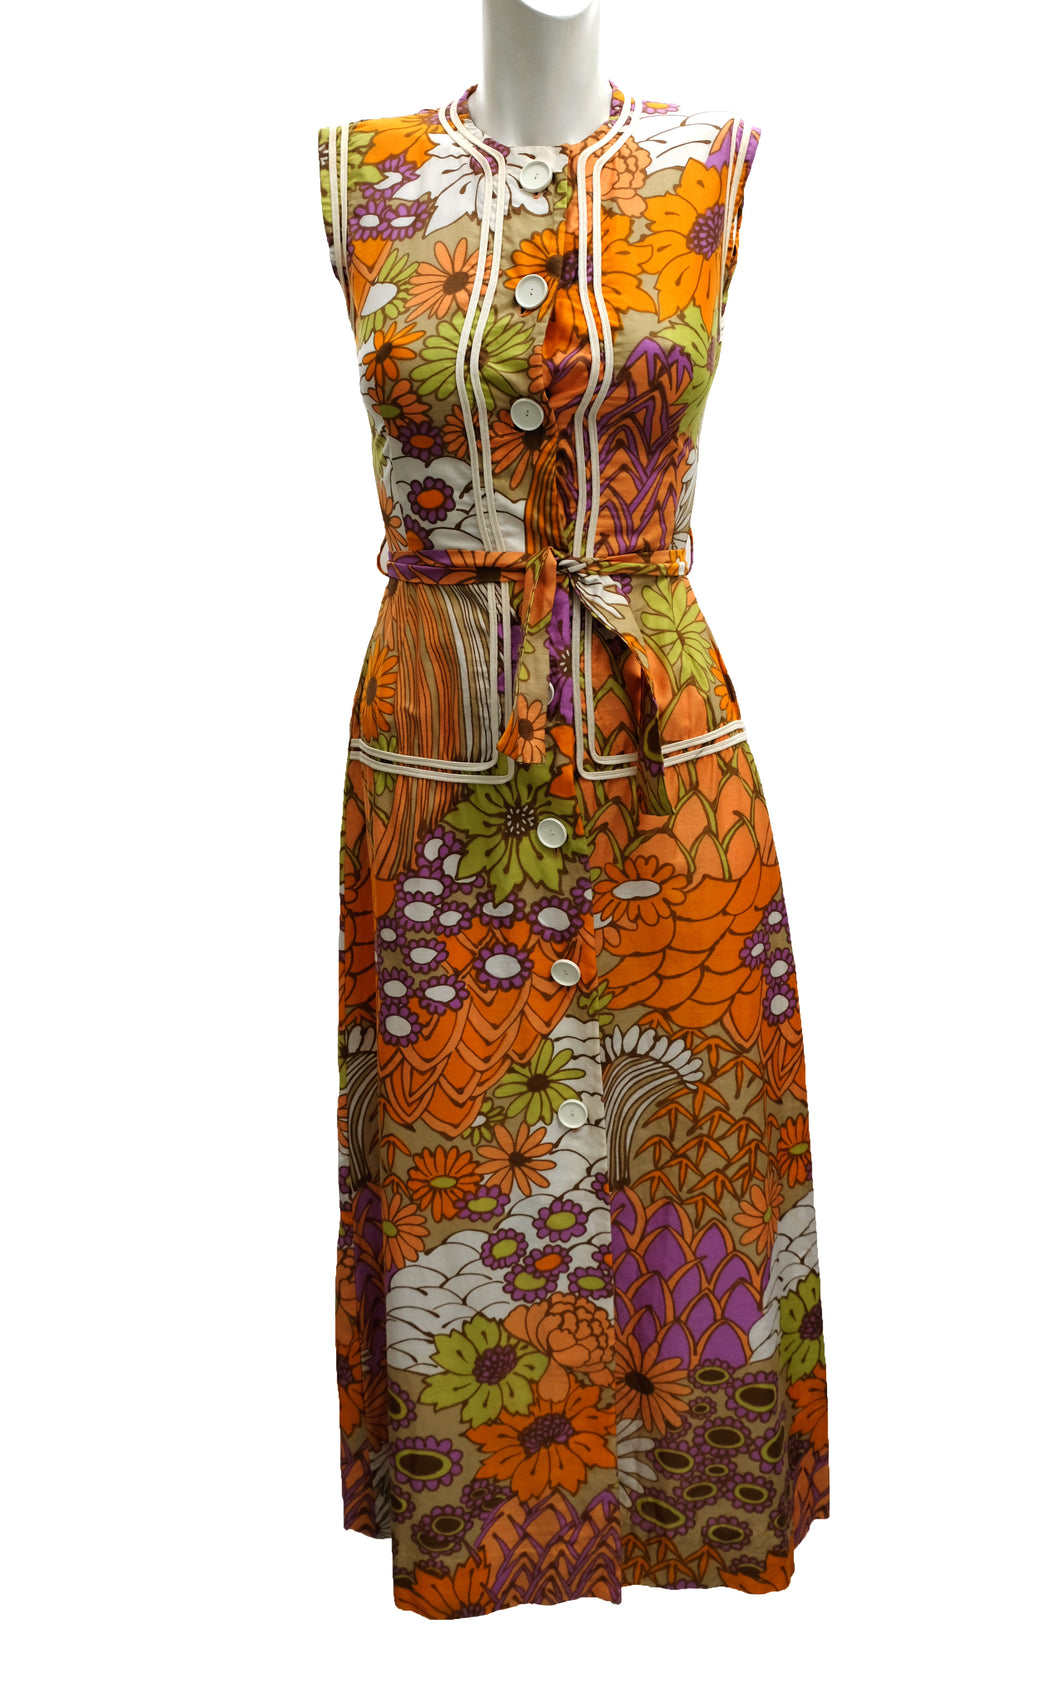 Gerald Davies Vintage Trippy Floral Summer Dress, UK8-10